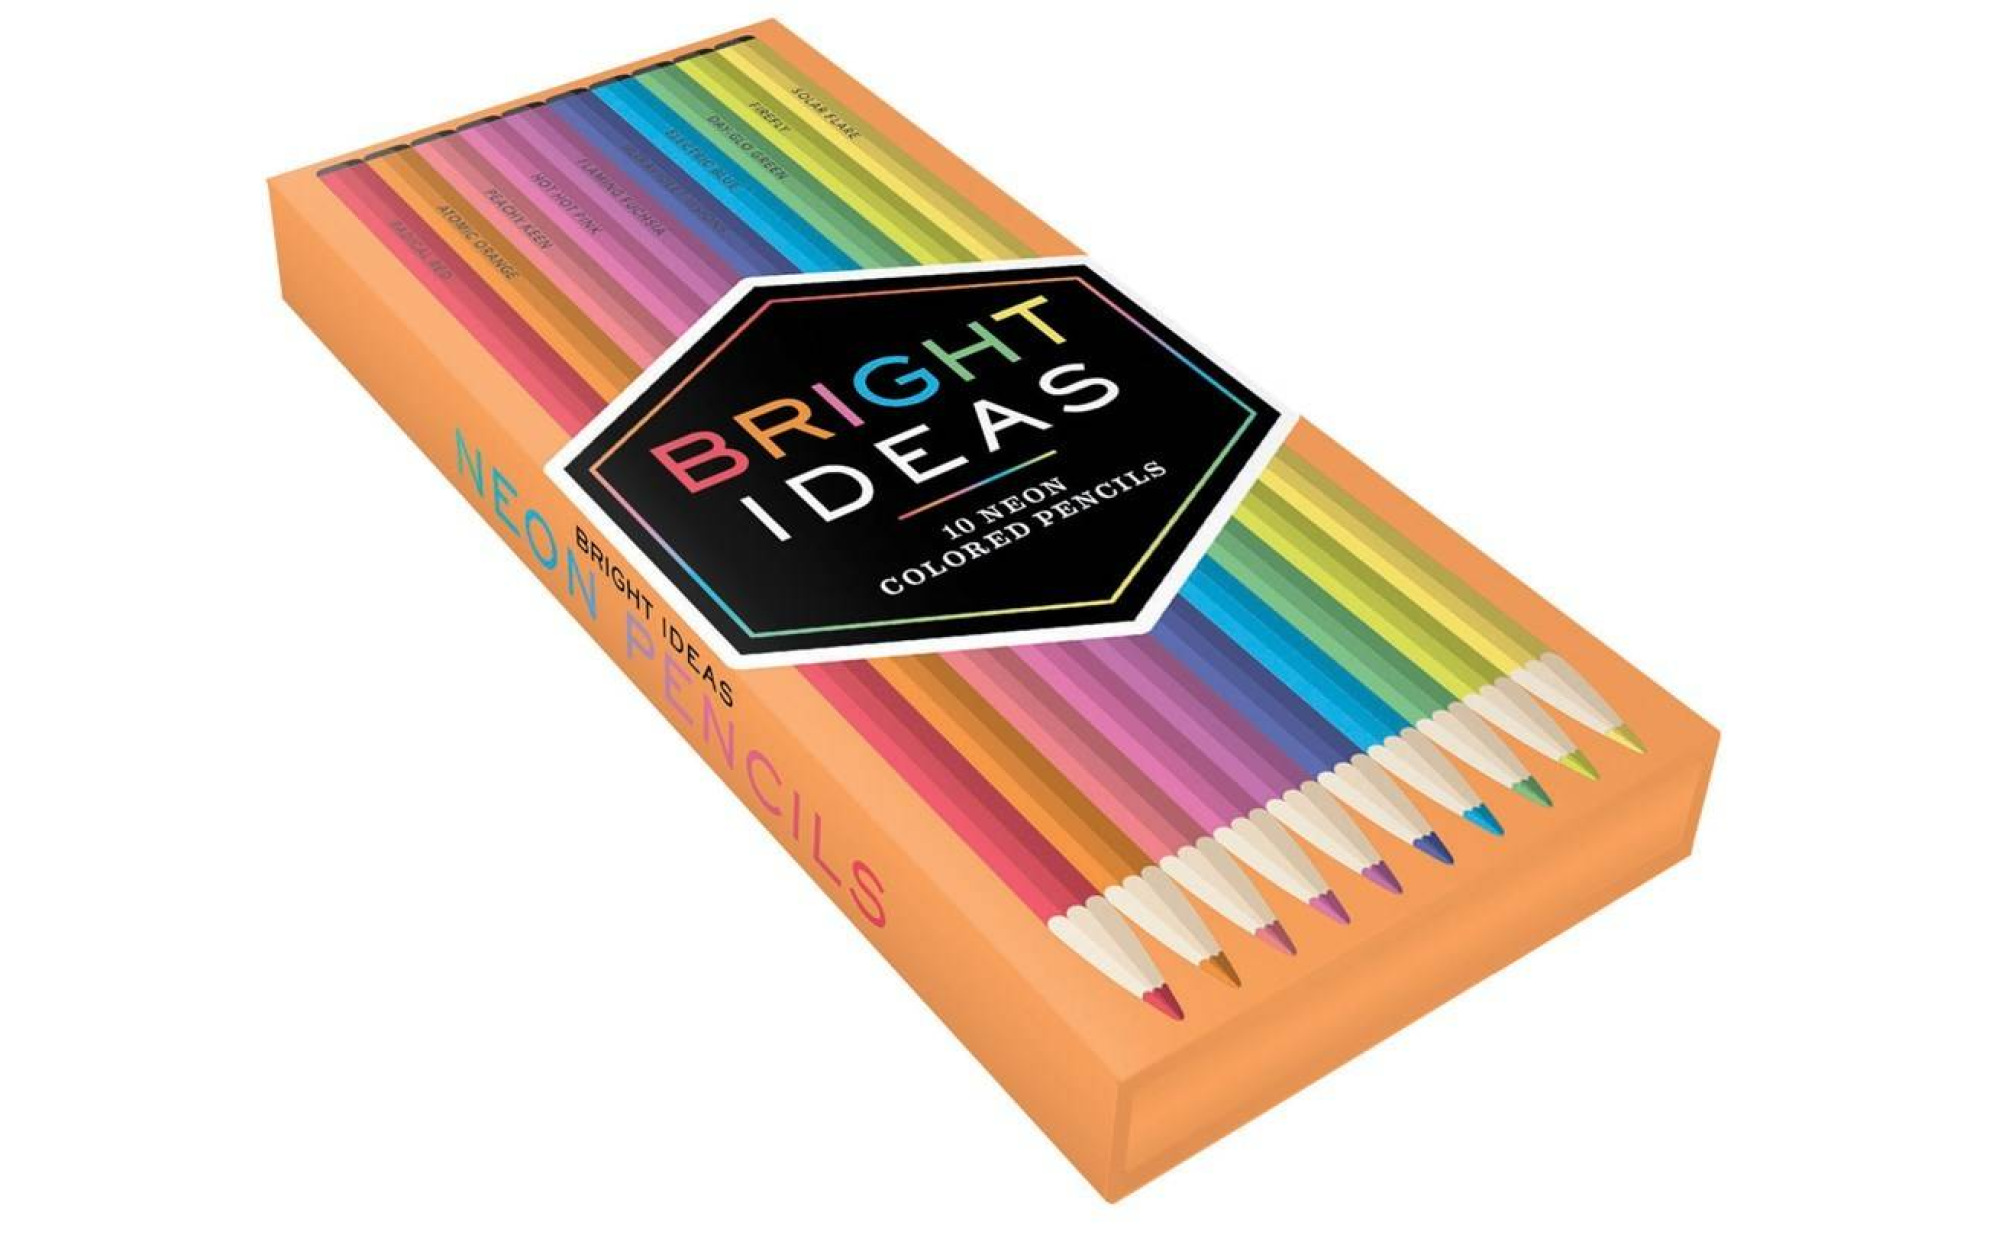 Bright Ideas Colored Pencils – Art Therapy